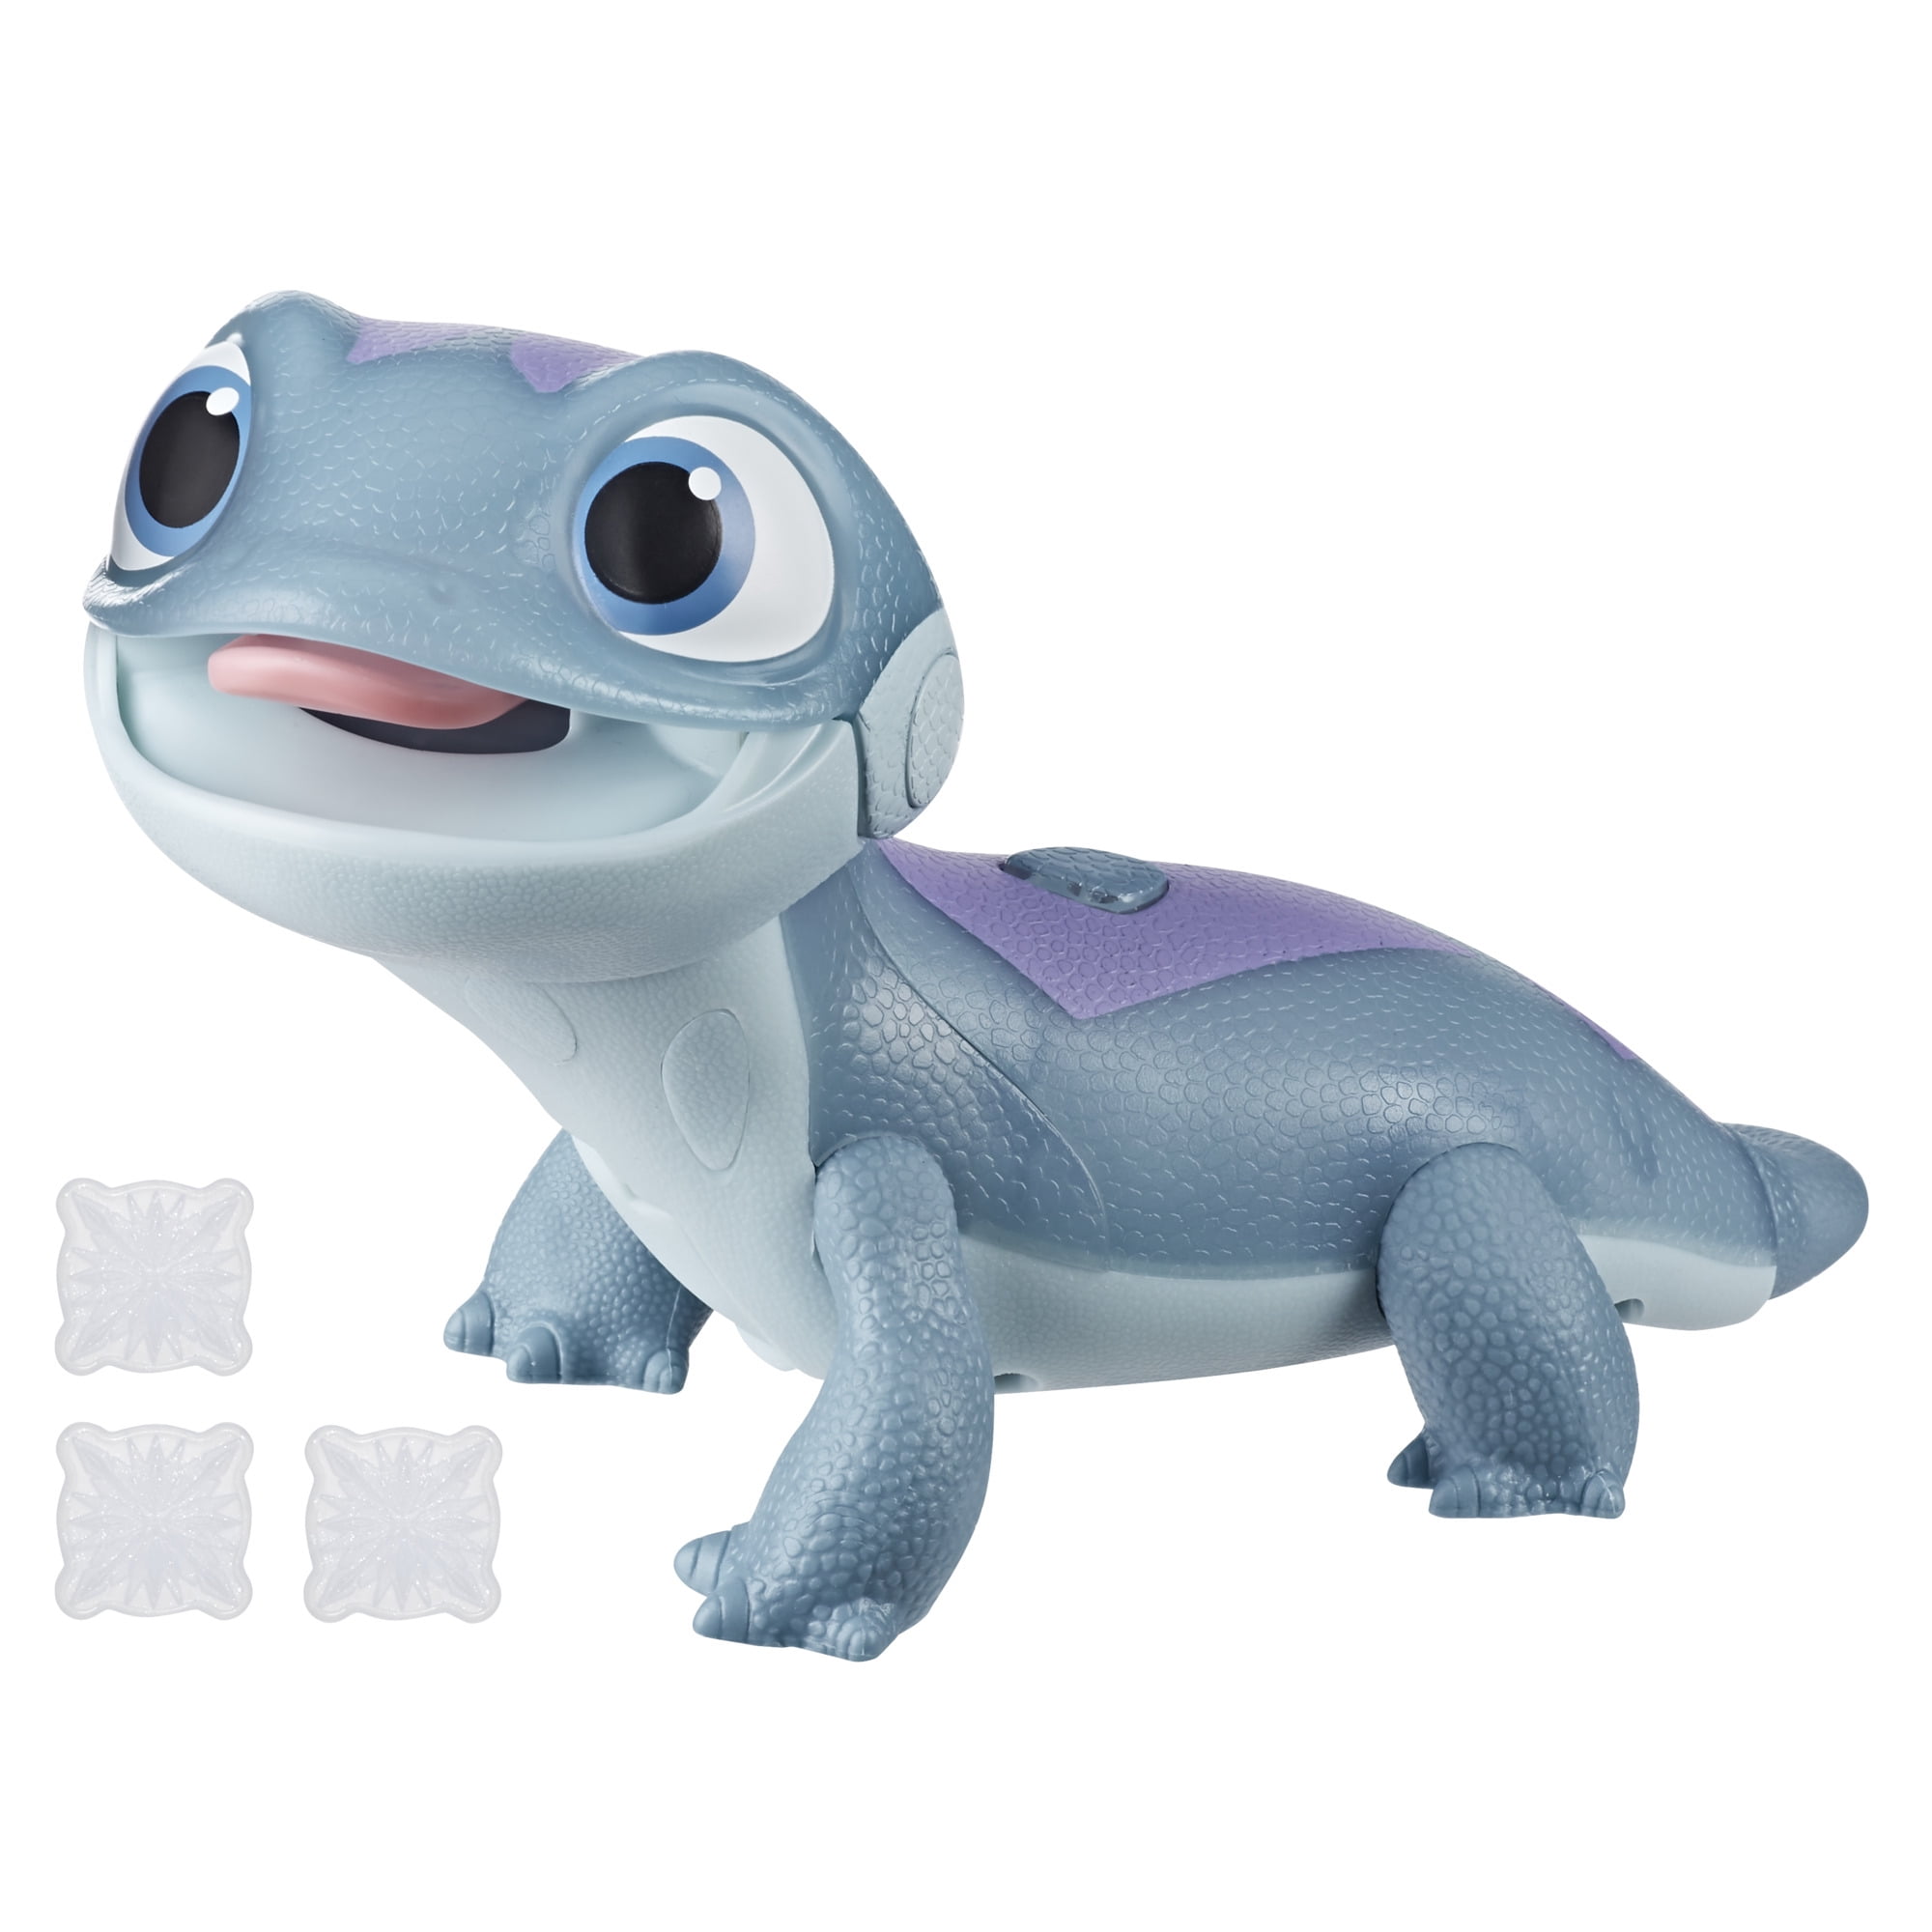 Christmas Gifts Frozen 2 Salamander Plush Stuffed Toy 6" Small Kids Cute Animal 